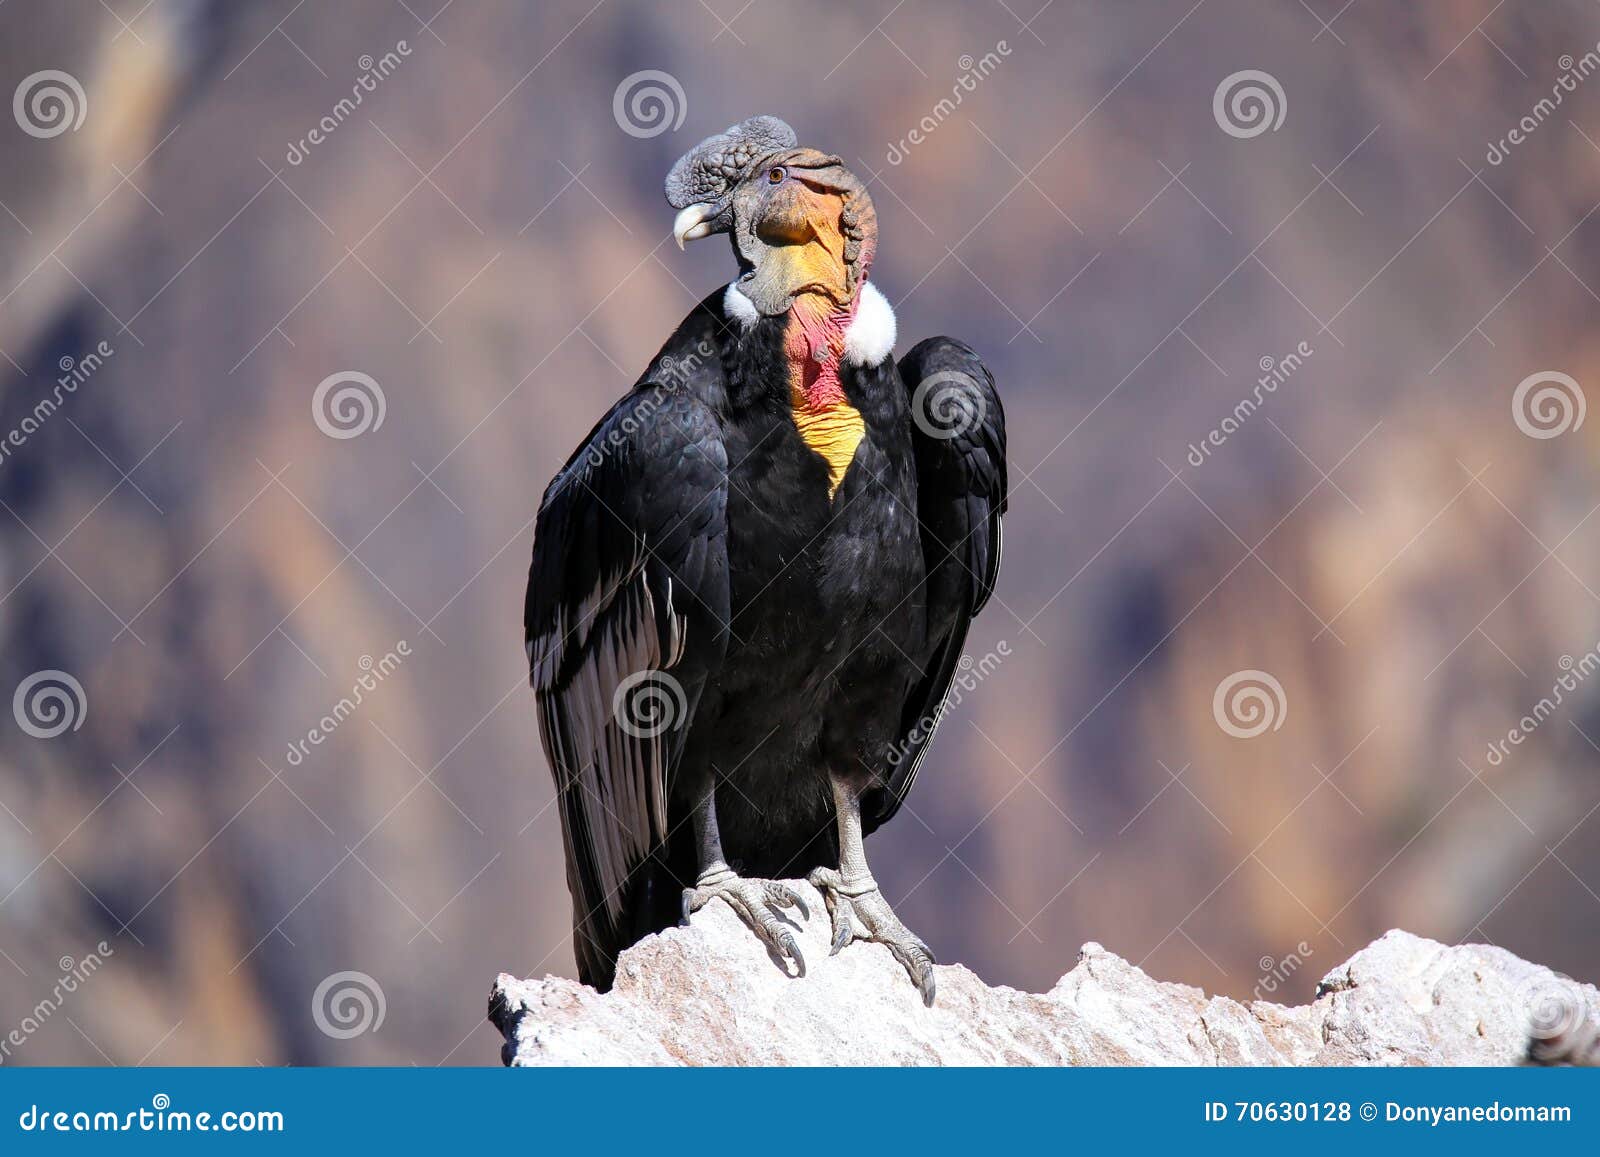 andean condor sitting at mirador cruz del condor in colca canyon